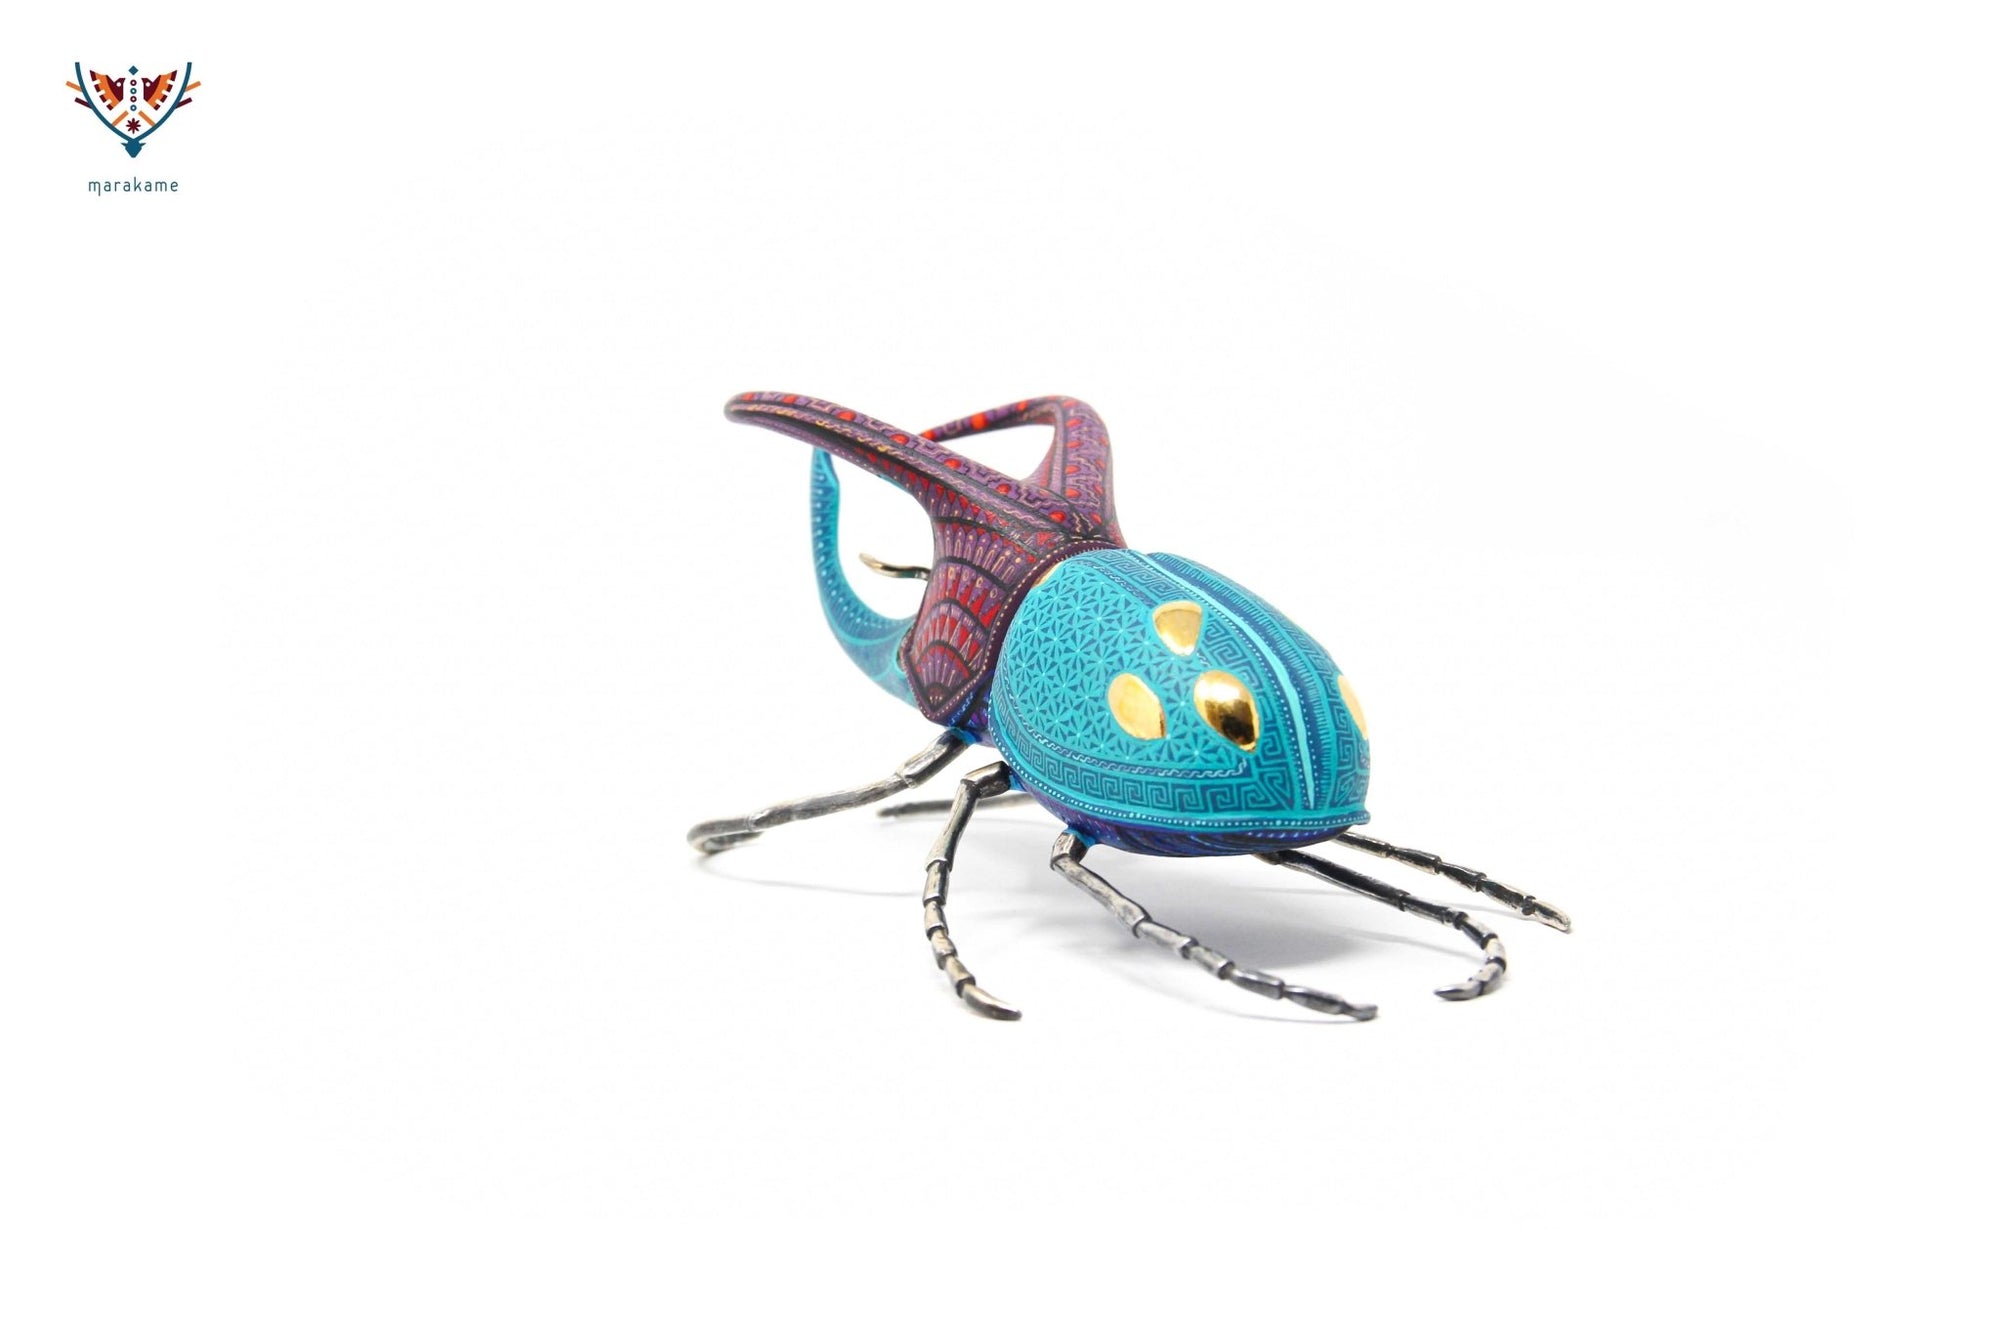 Male beetle - Witol yee mash II - Huichol art - Marakame